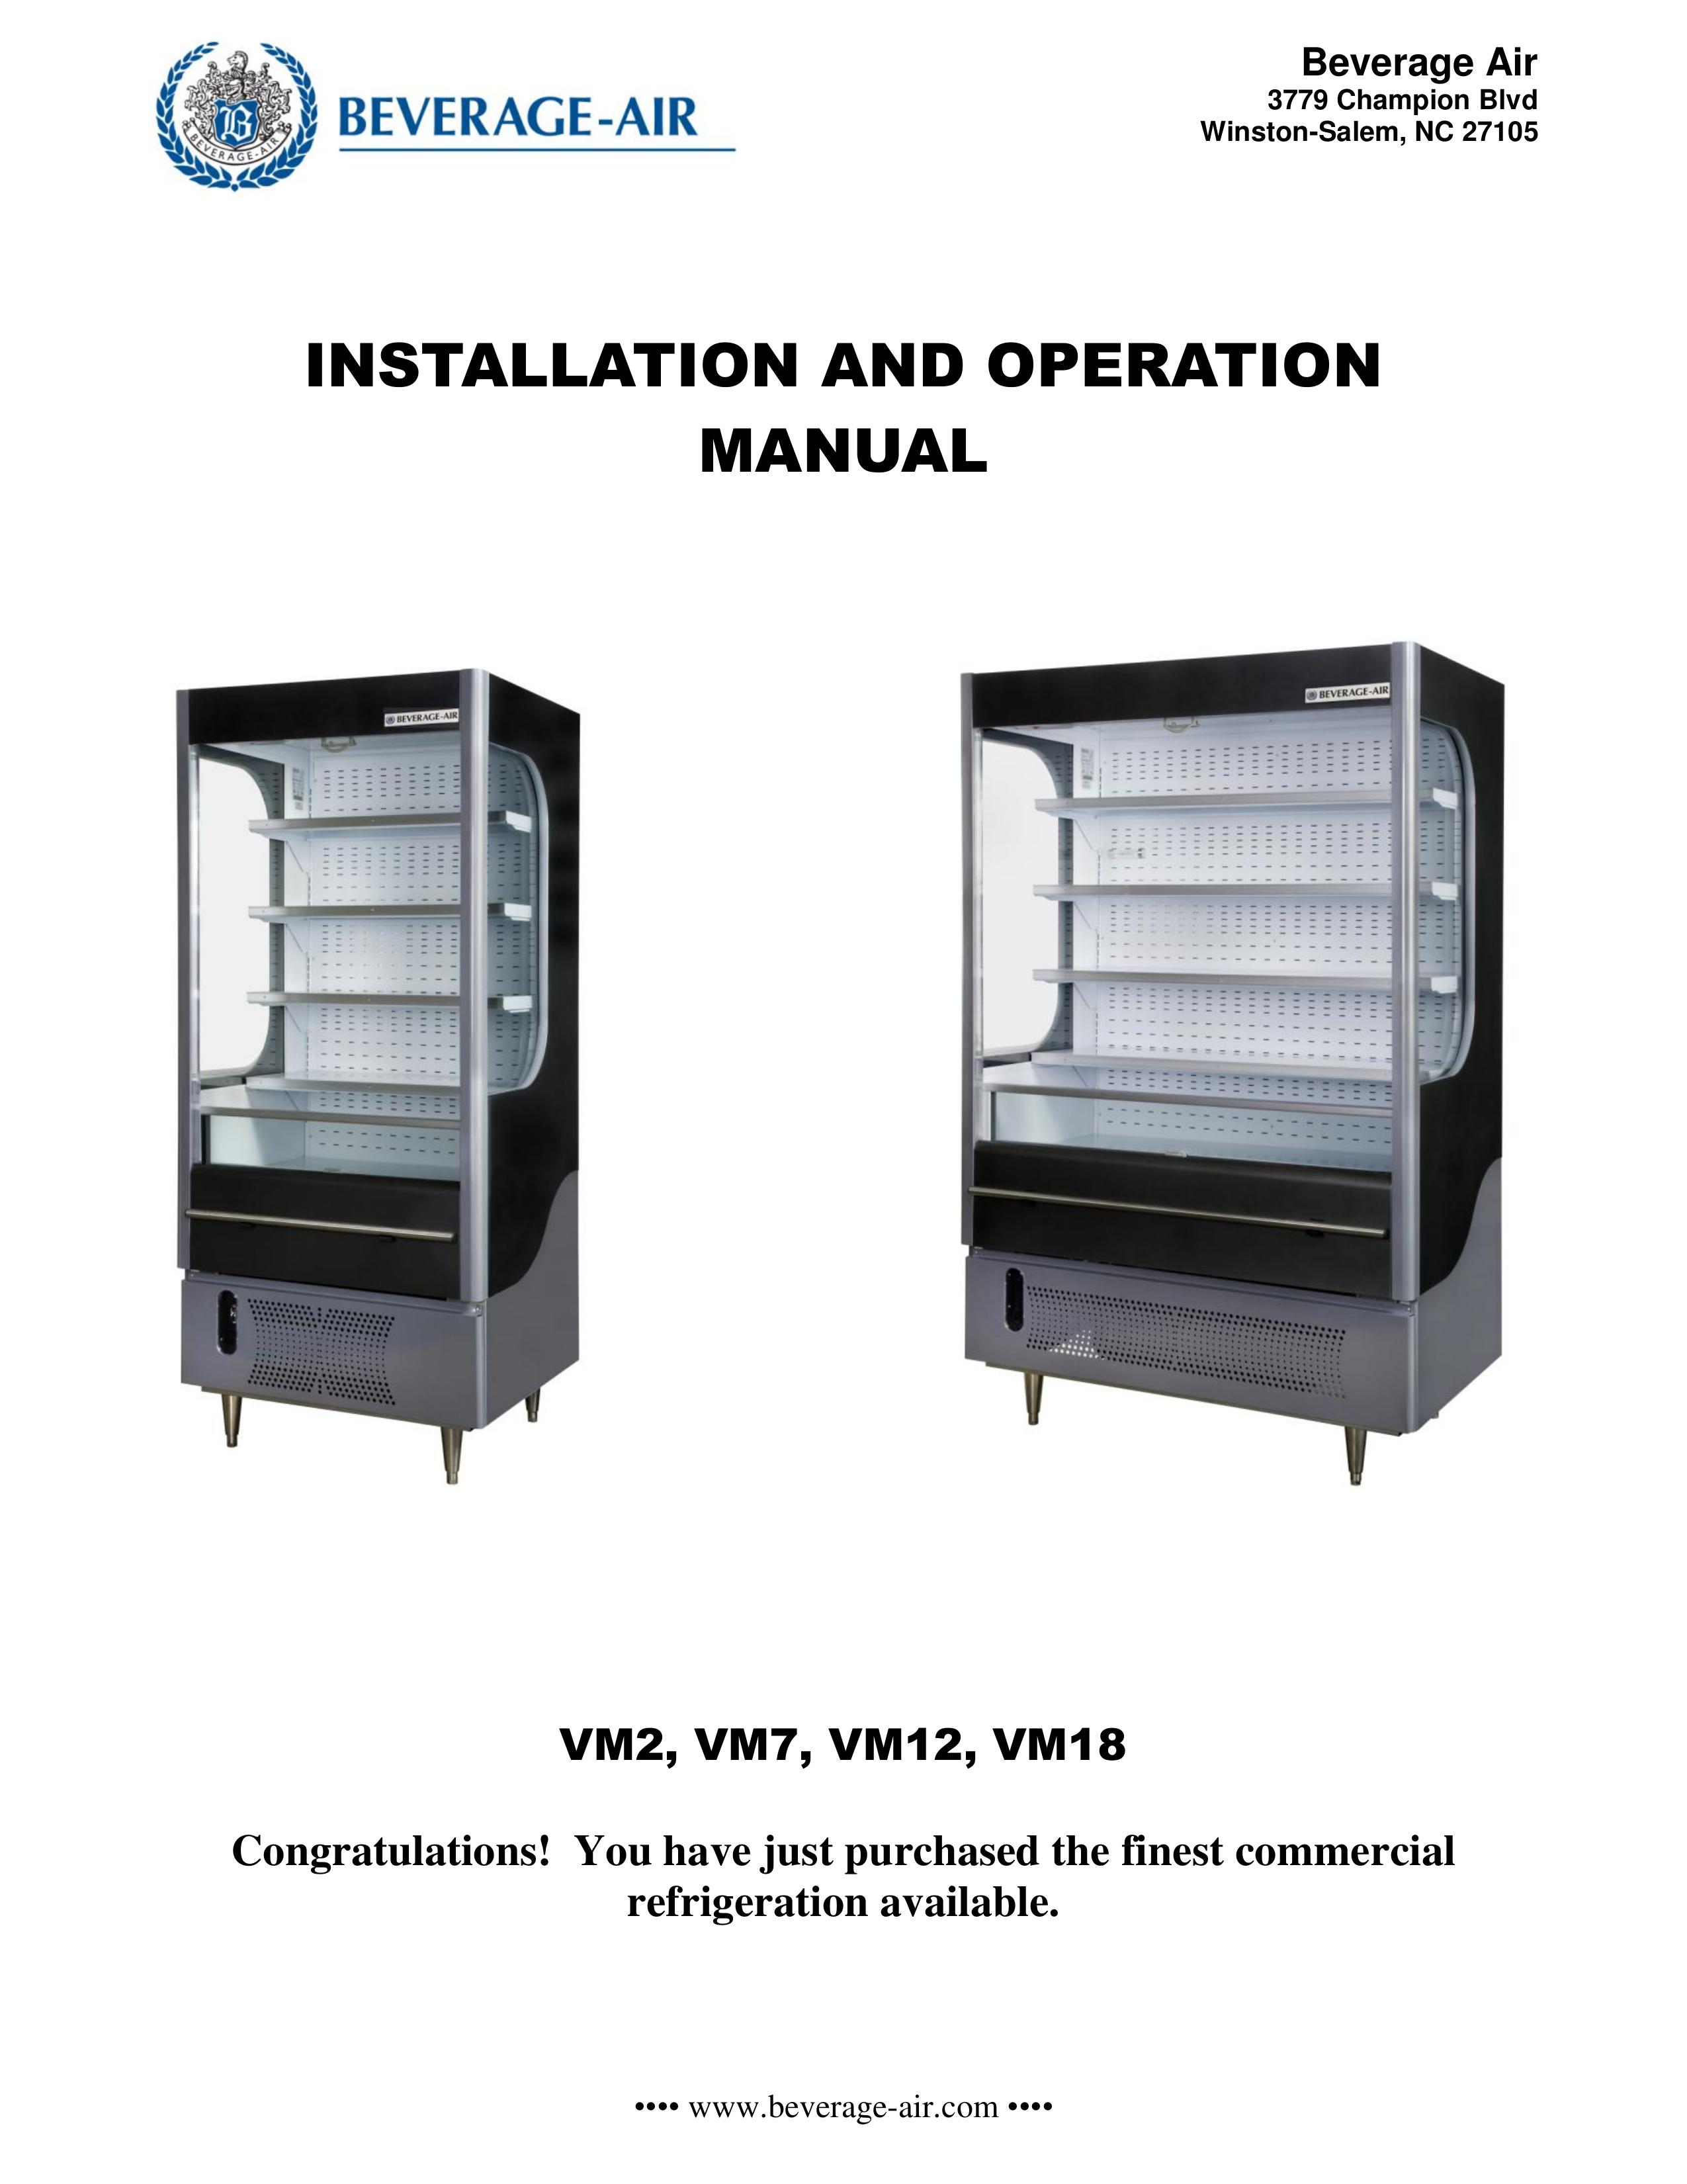 Beverage-Air VM12 Refrigerator User Manual